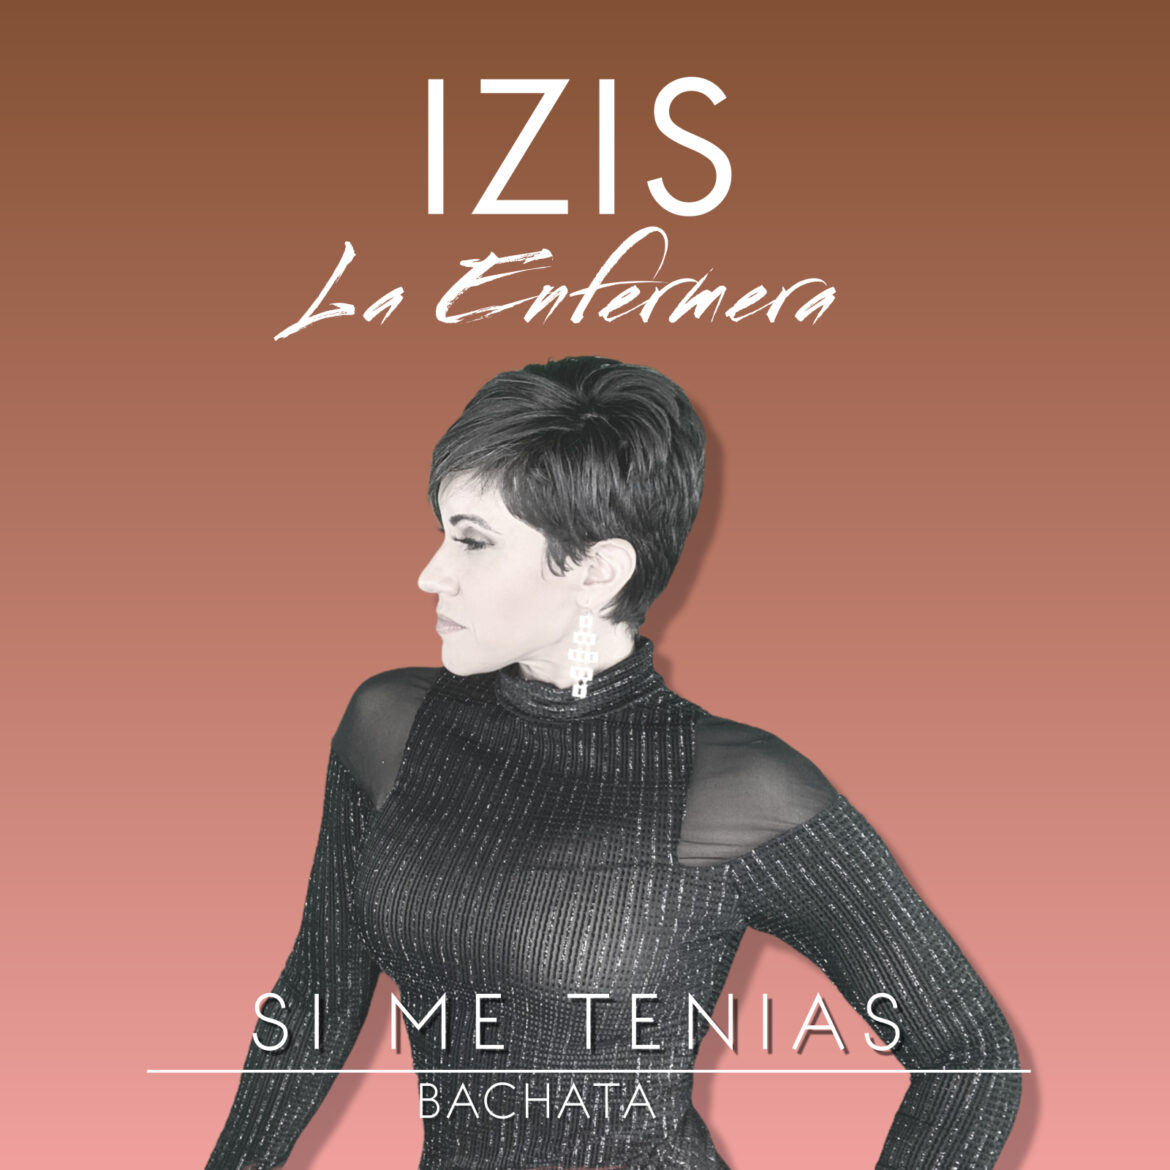 Izis La Enfermera presenta su nuevo sencillo “Si Me Tenias”